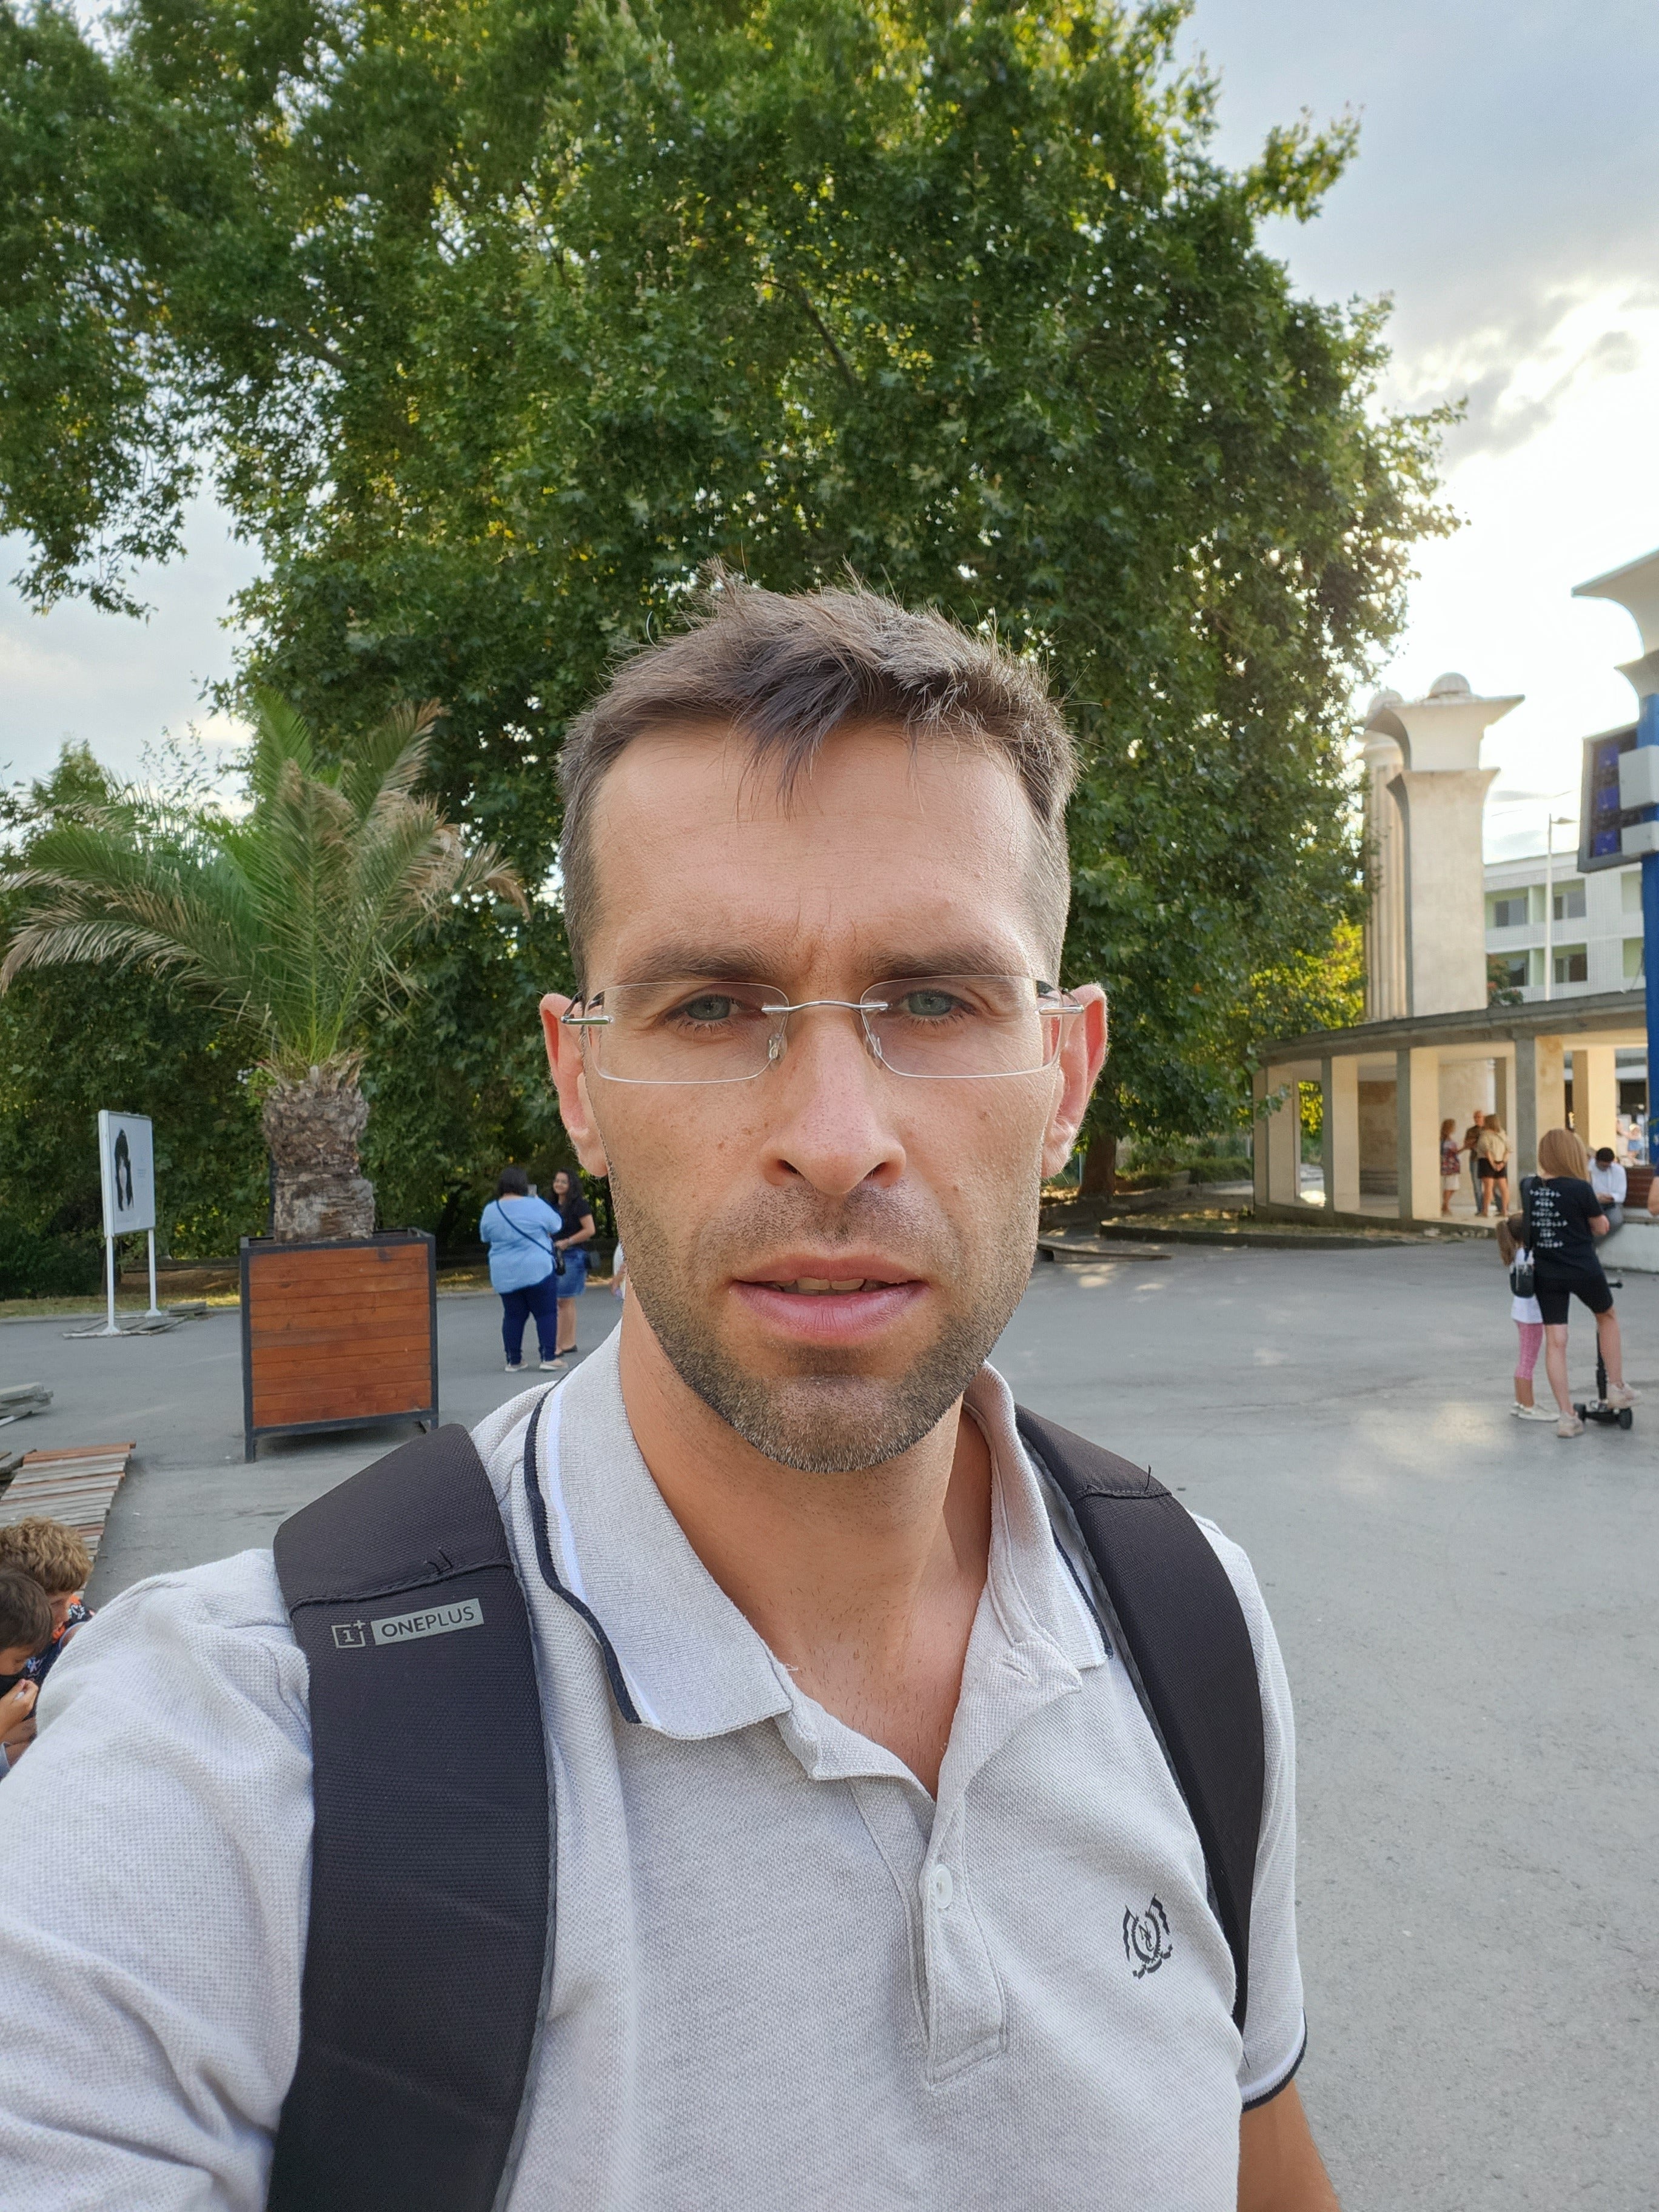 Z Fold 4 selfie (cover display) camera